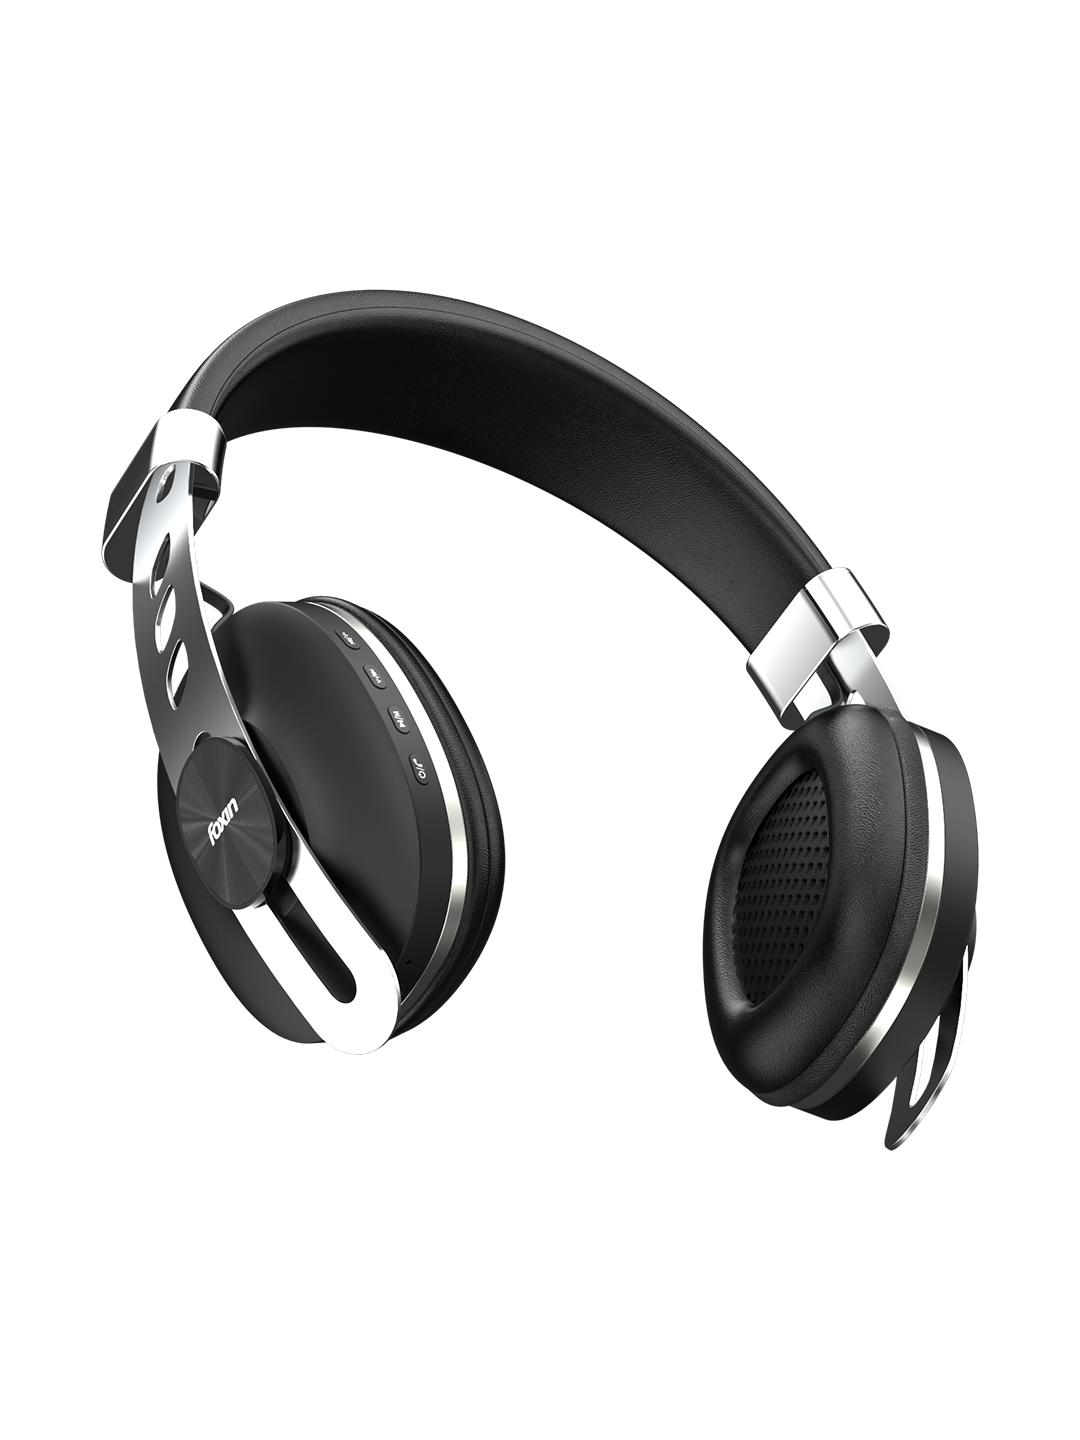 Foxin SUPREME 325 Wireless Headphones